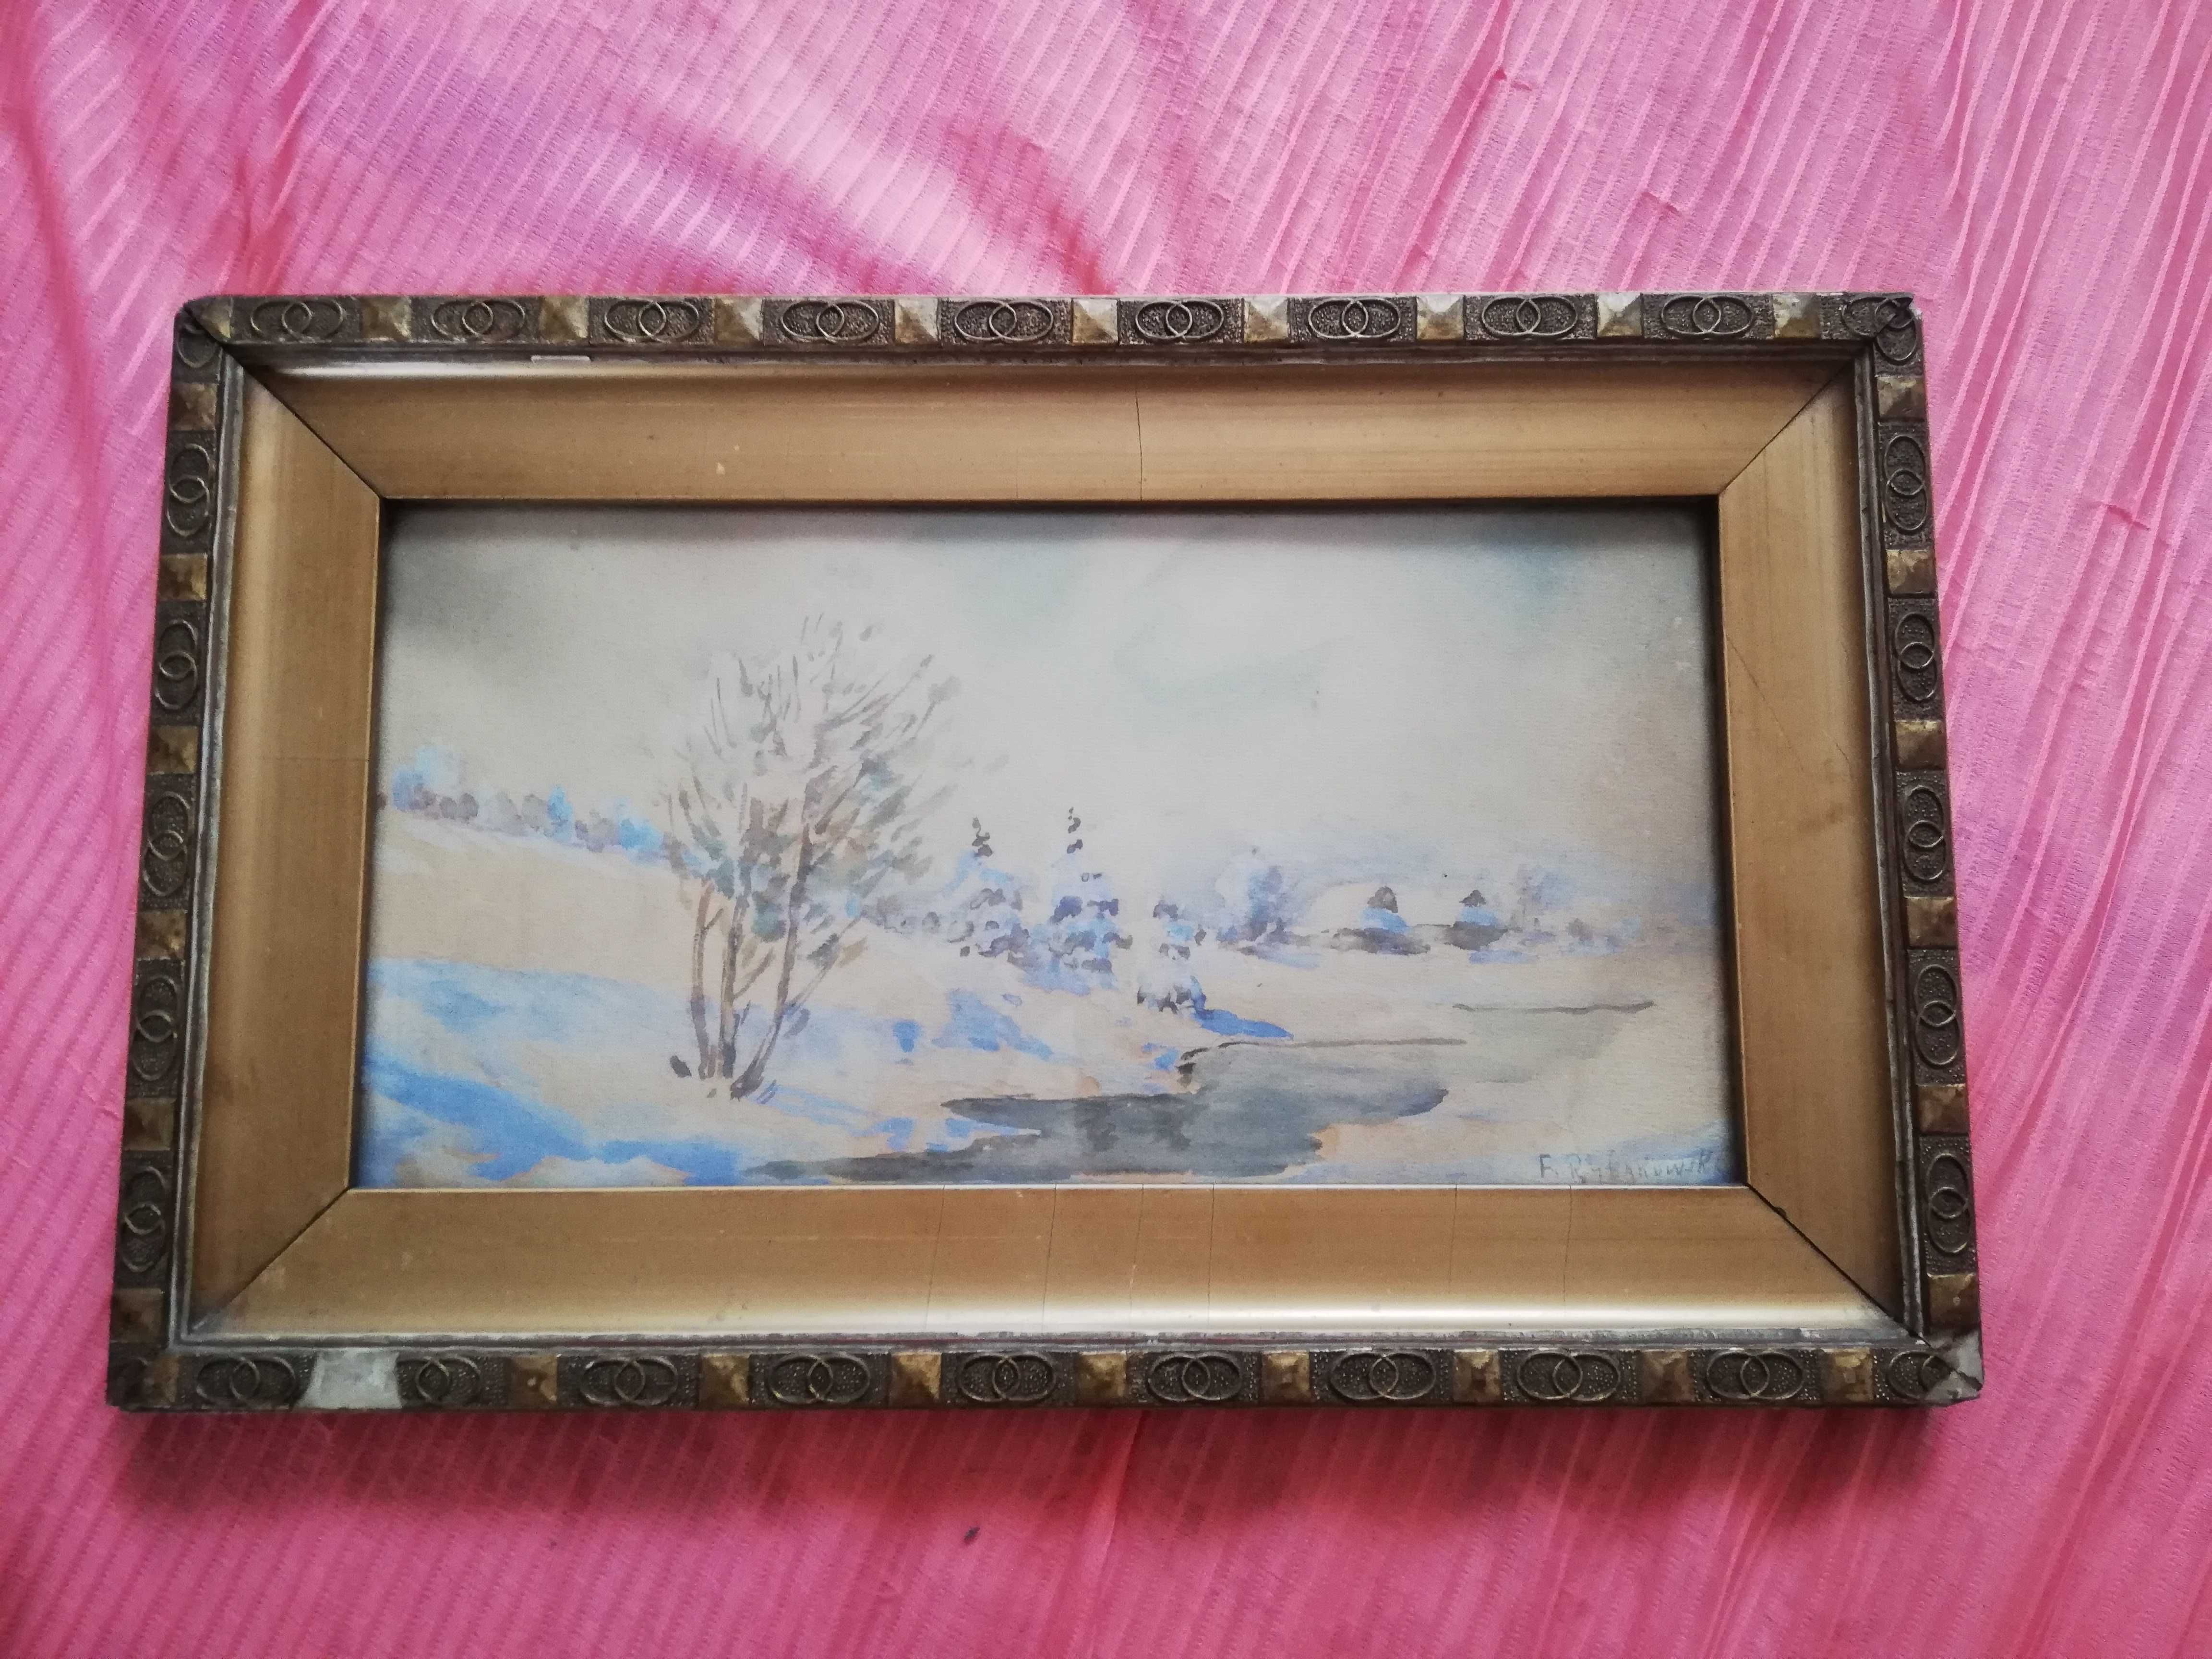 Feliks Rybakowski zimowy pejzaż z rzaką oryginalny obraz sygnowany